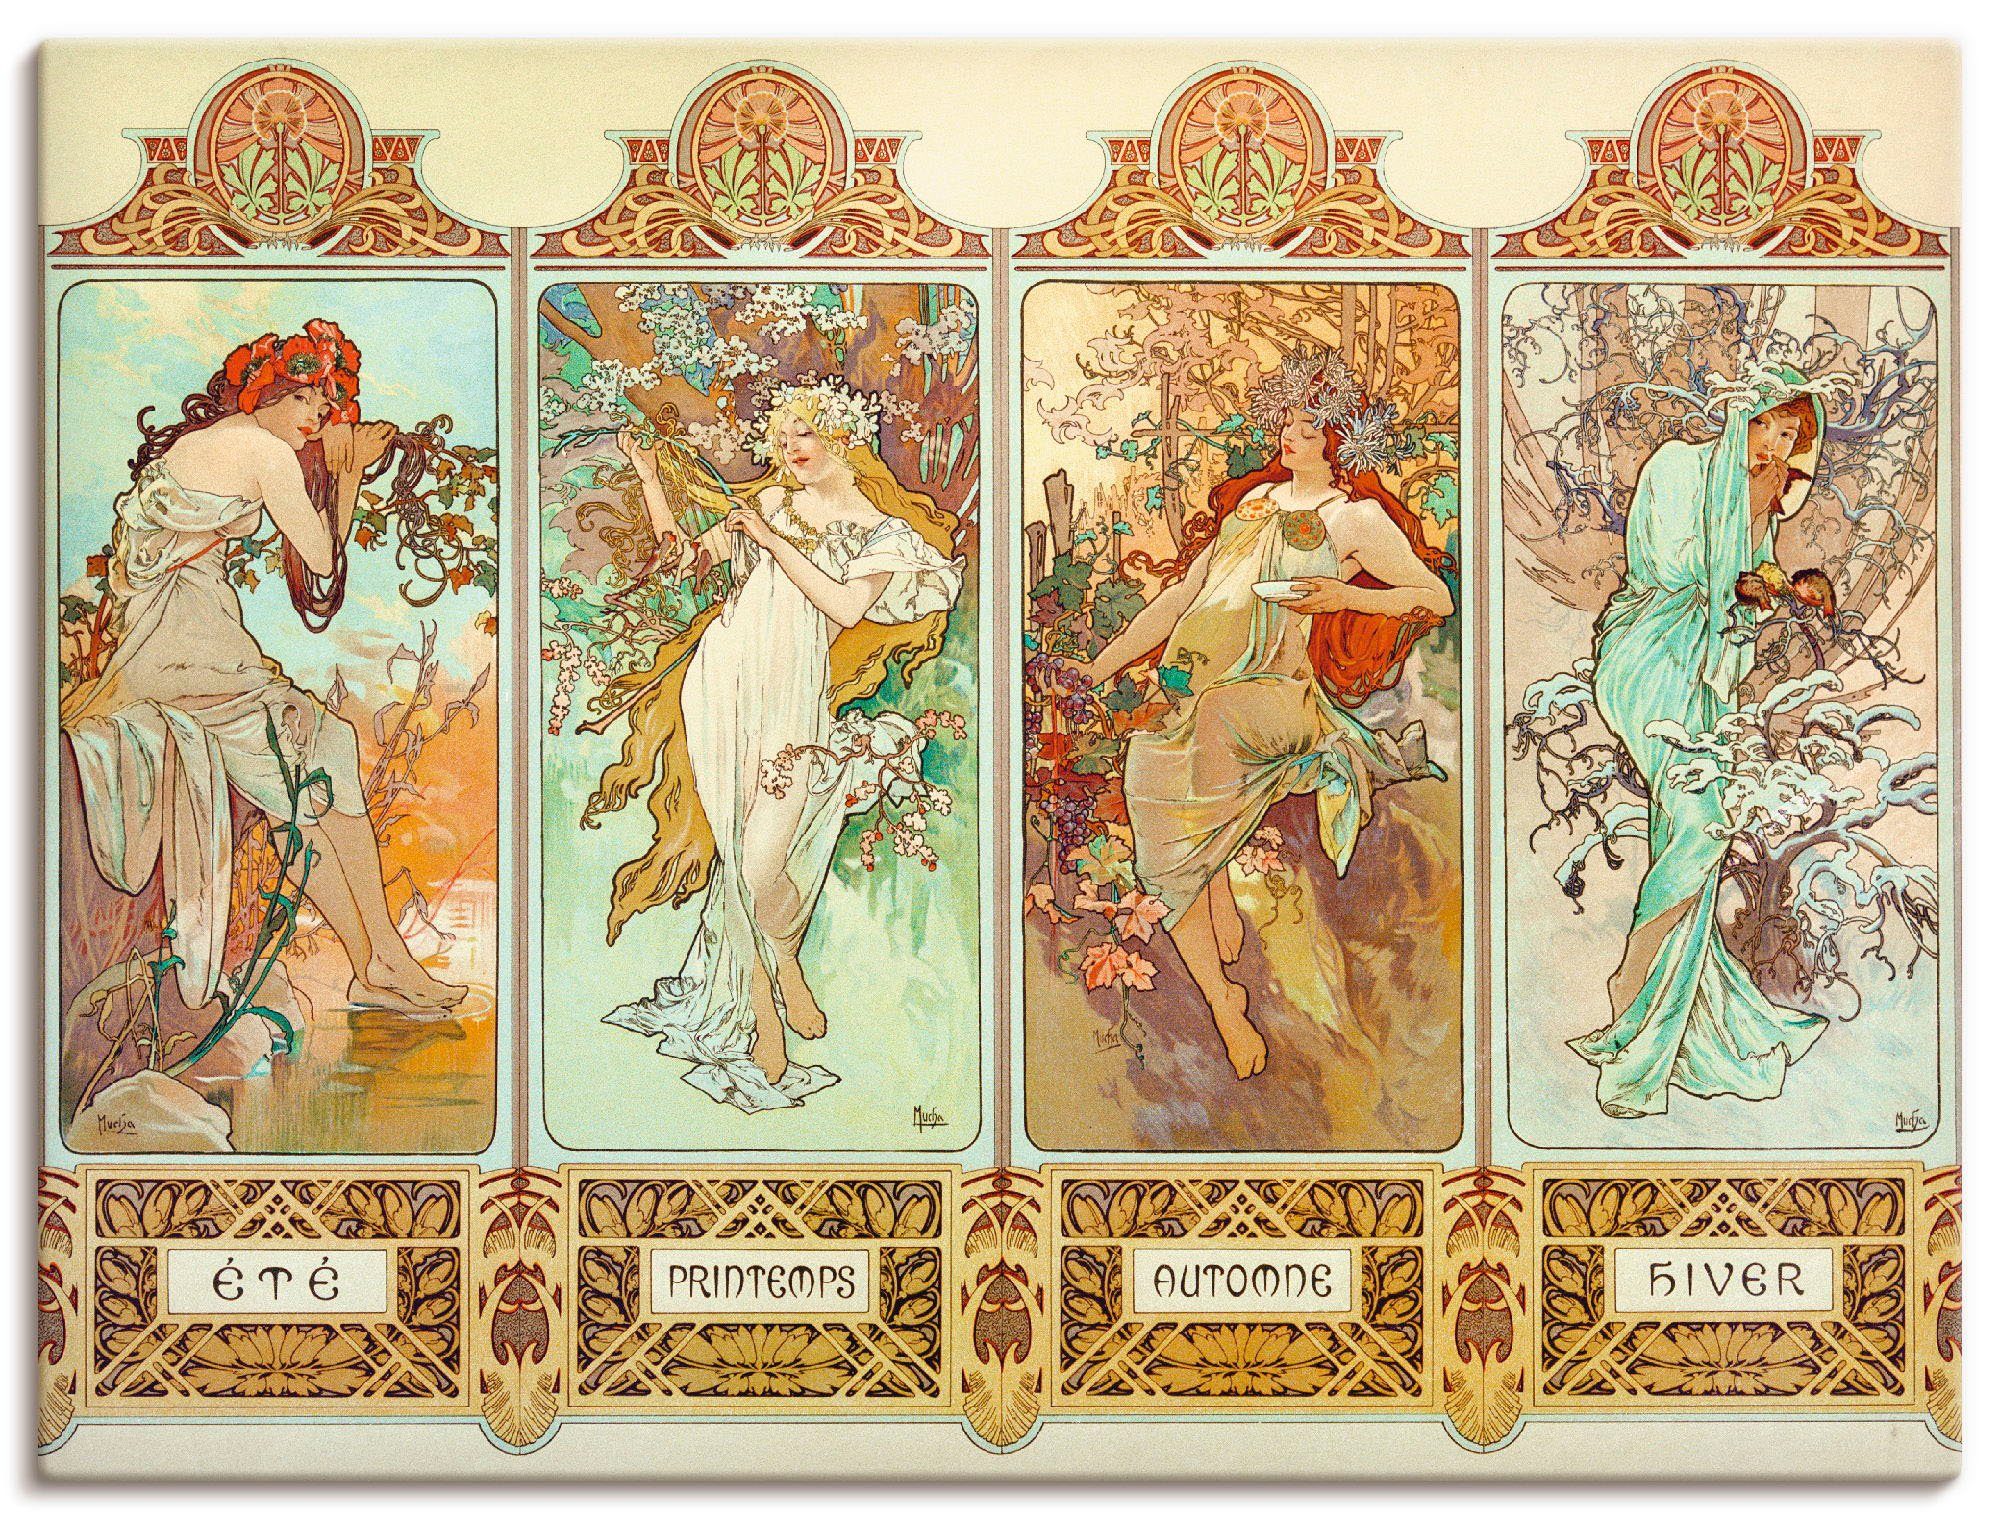 Artland Artprint De vier seizoenen, 1896 in vele afmetingen & productsoorten -artprint op linnen, poster, muursticker / wandfolie ook geschikt voor de badkamer (1 stuk)